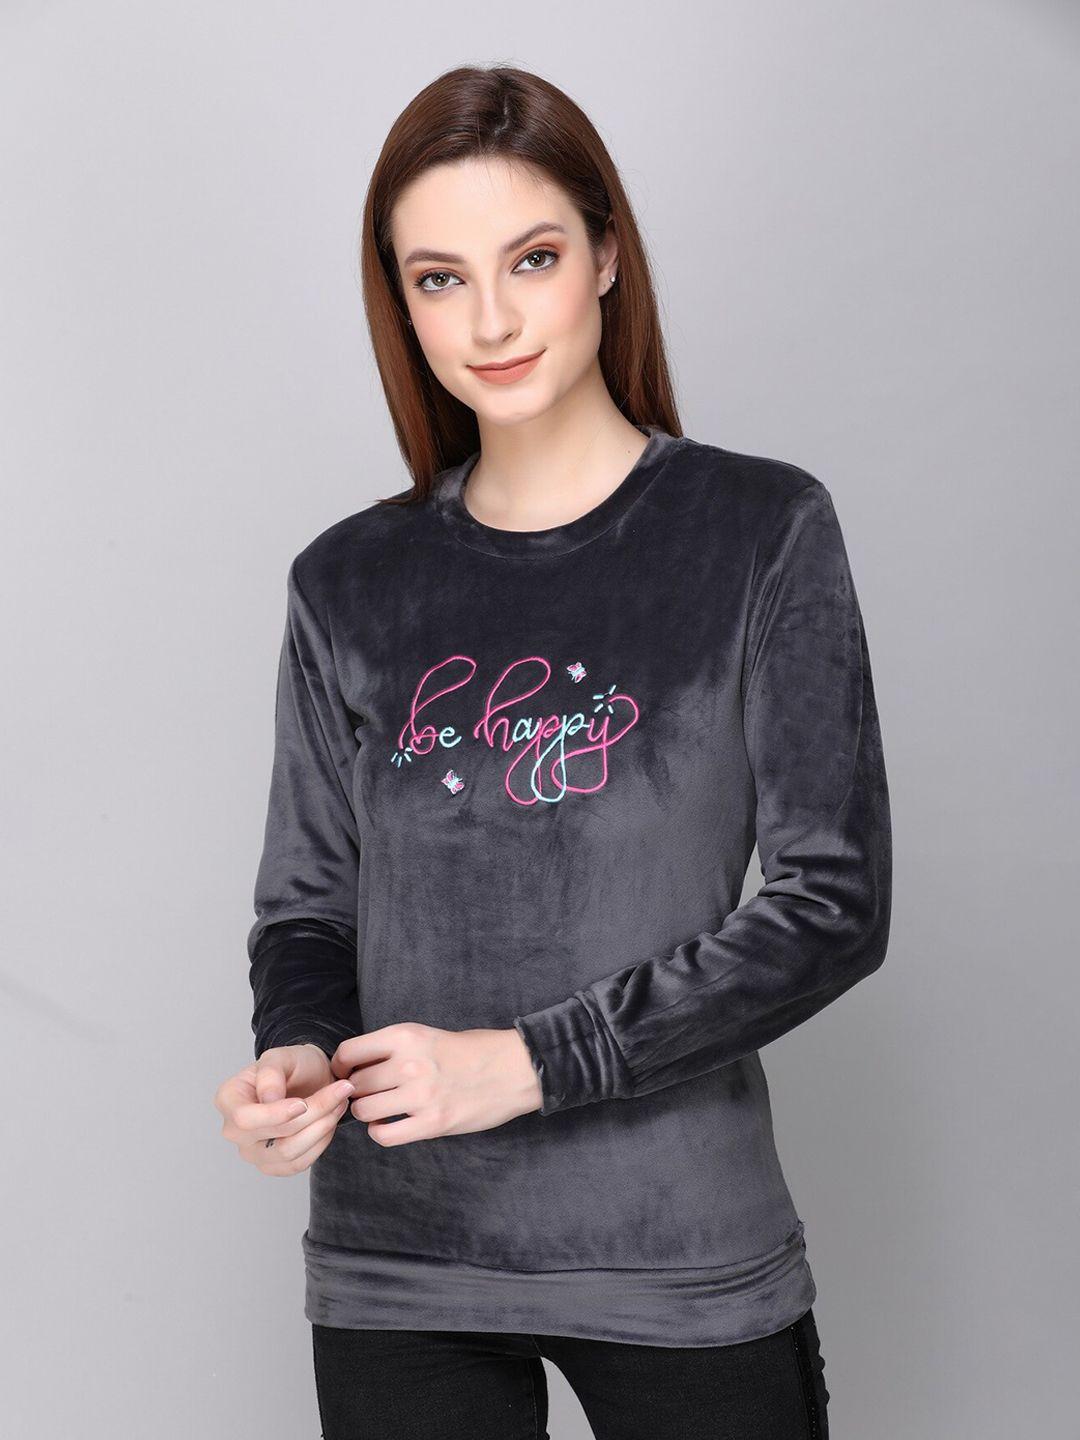 cushybee-women-charcoal-embroidered-sweatshirt